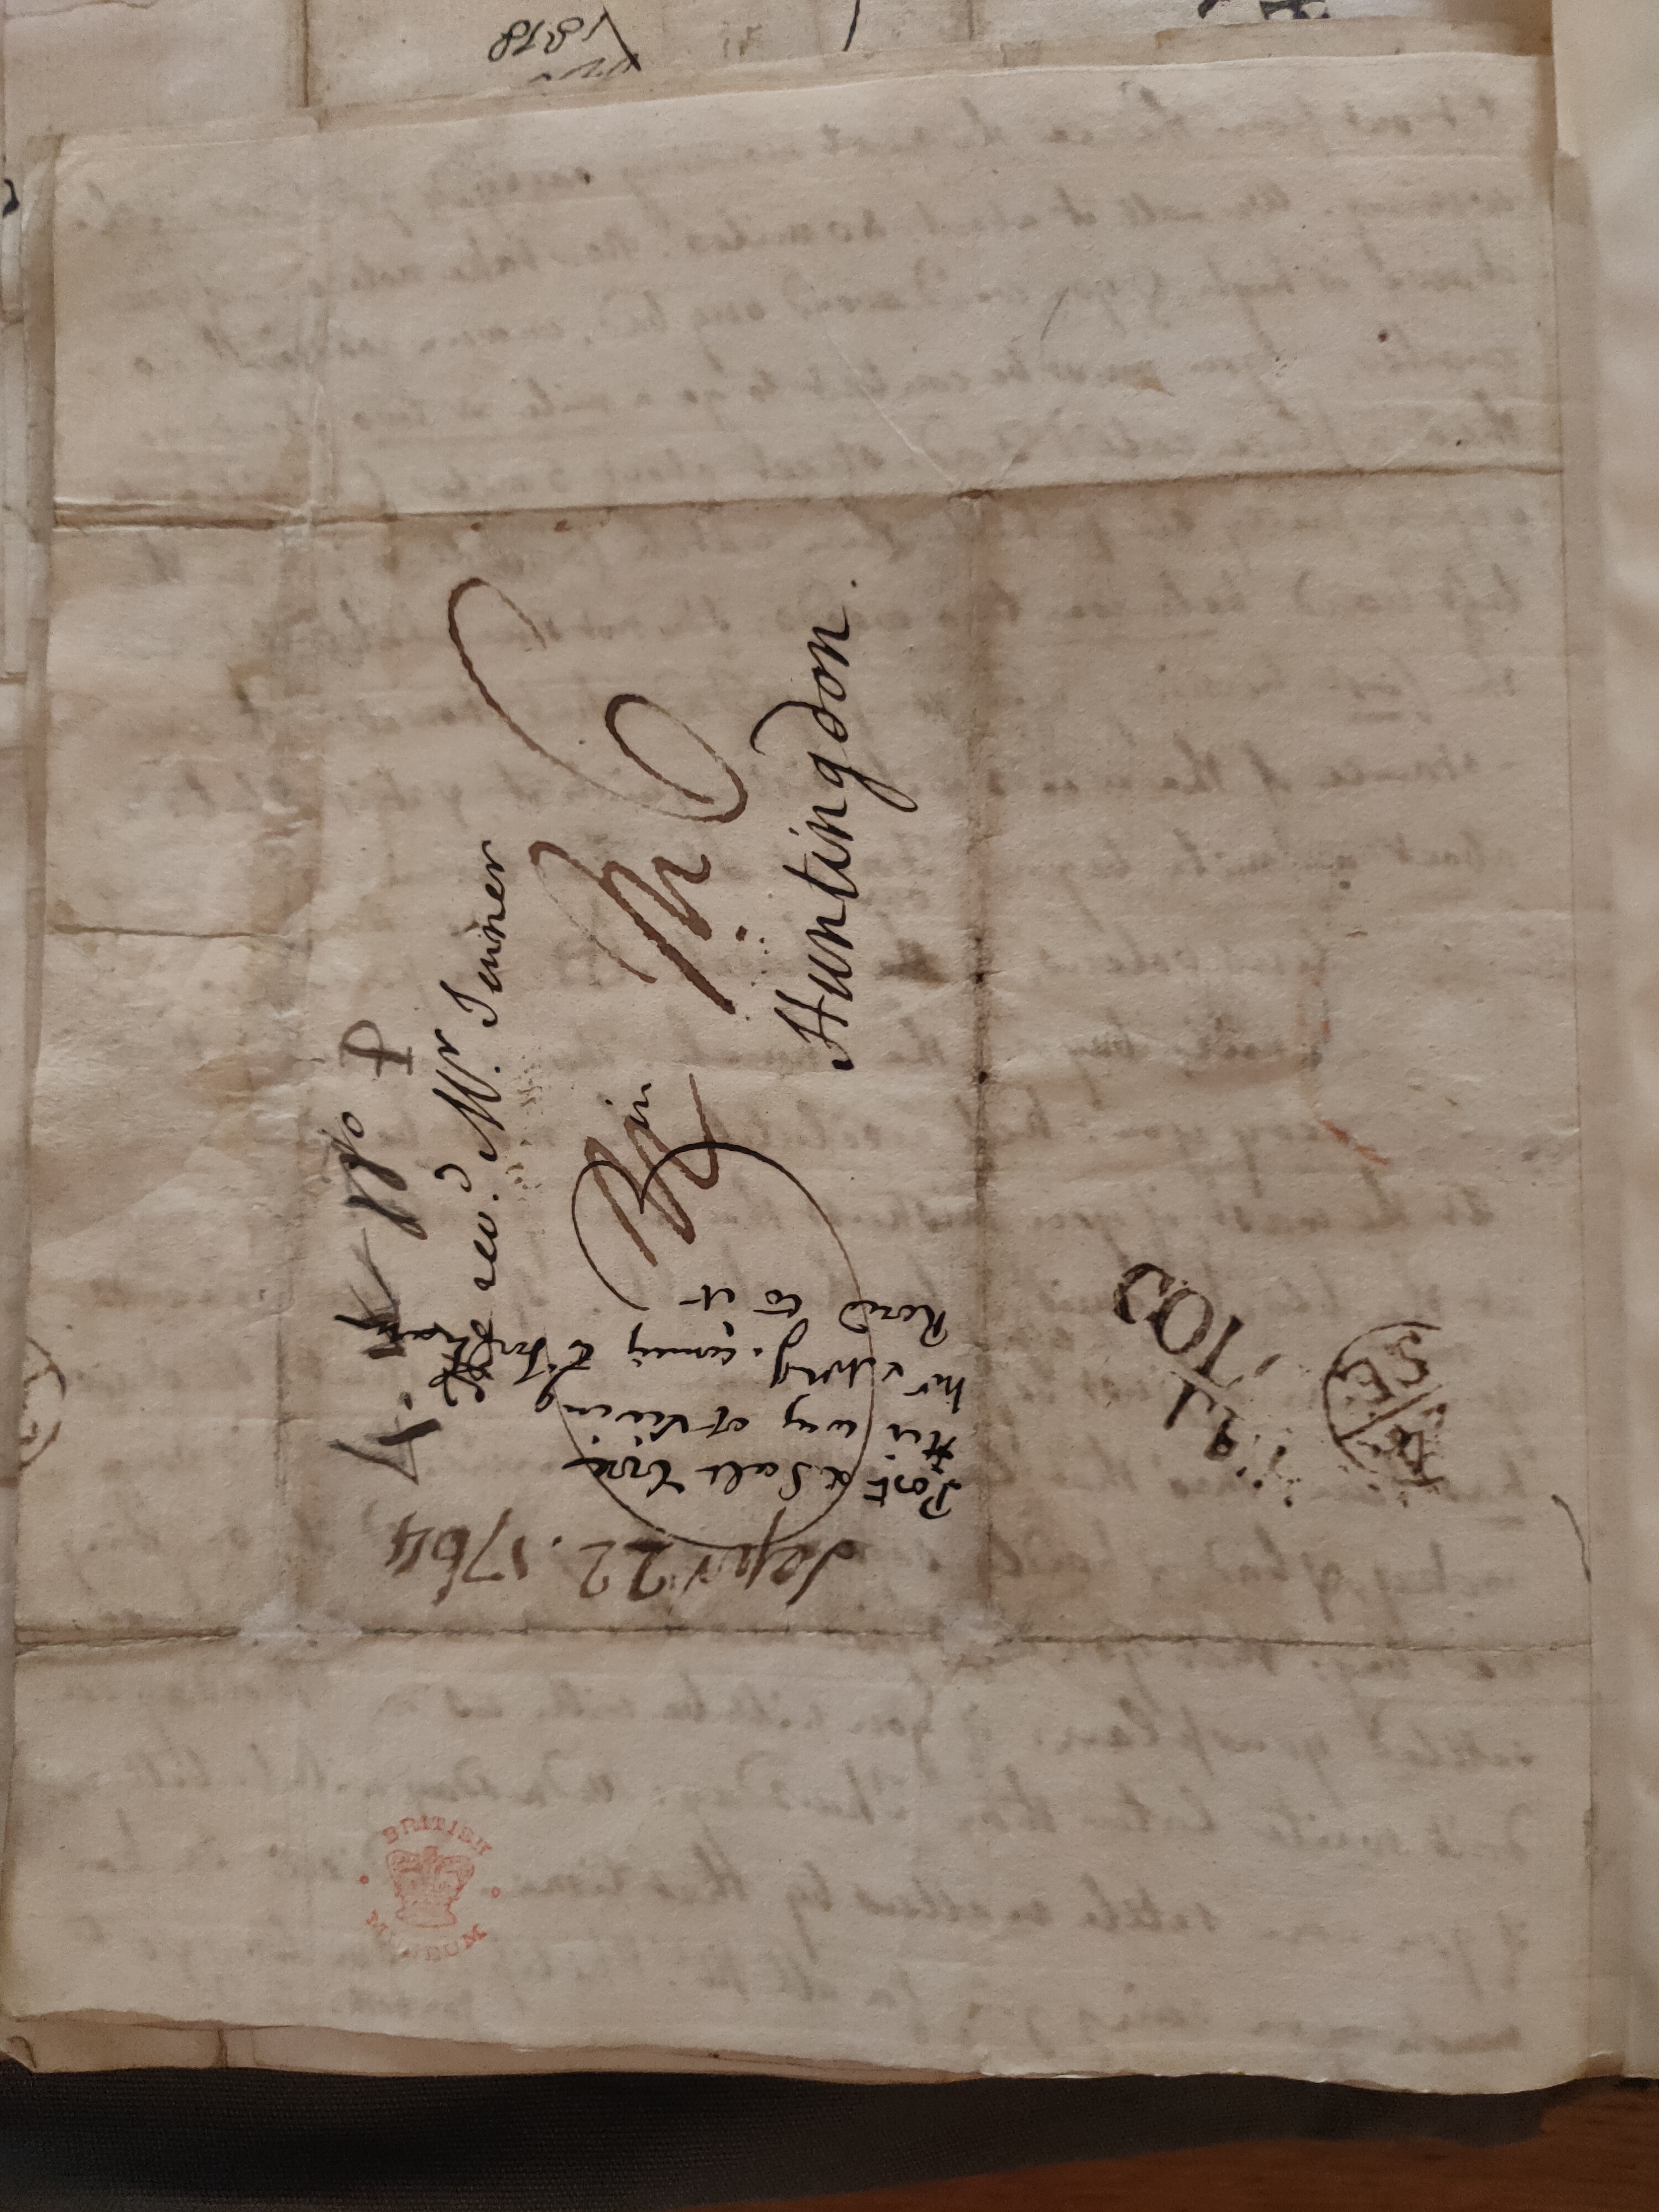 Image #4 of letter: Thomas Twining to Revd Mr Charles Jenner, 22 September 1764